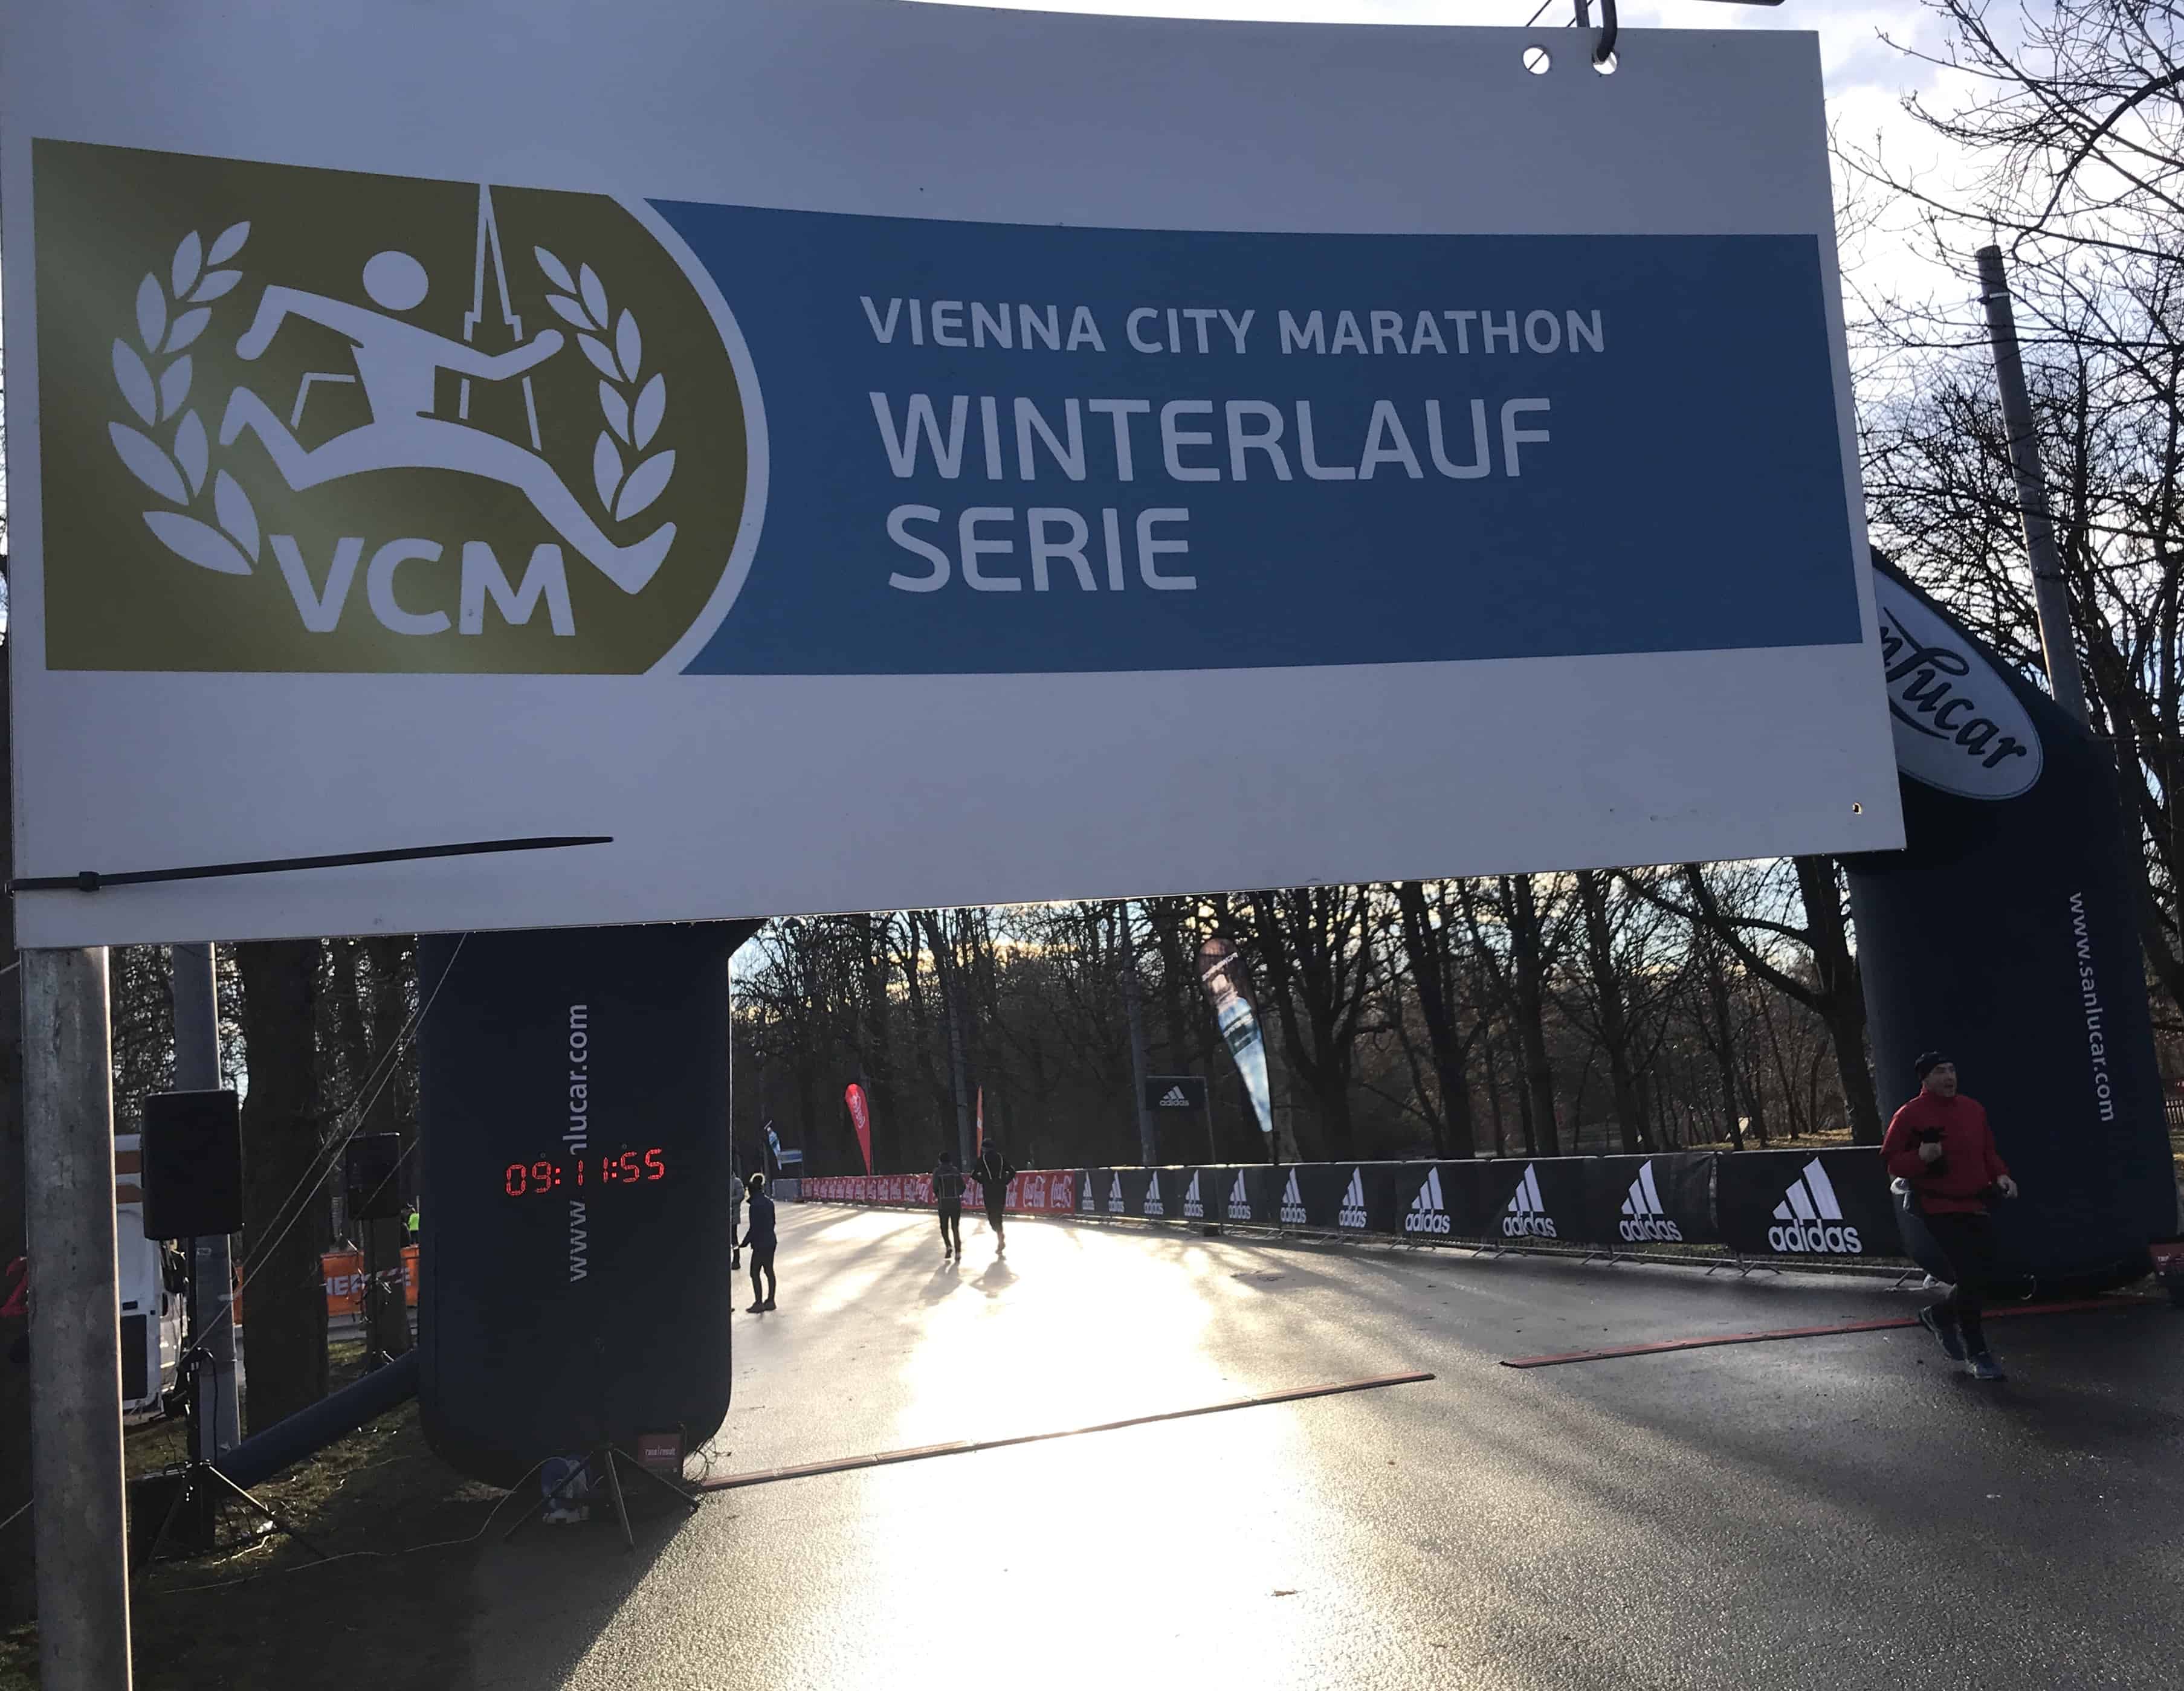 VCM Winterlaufserie 2019